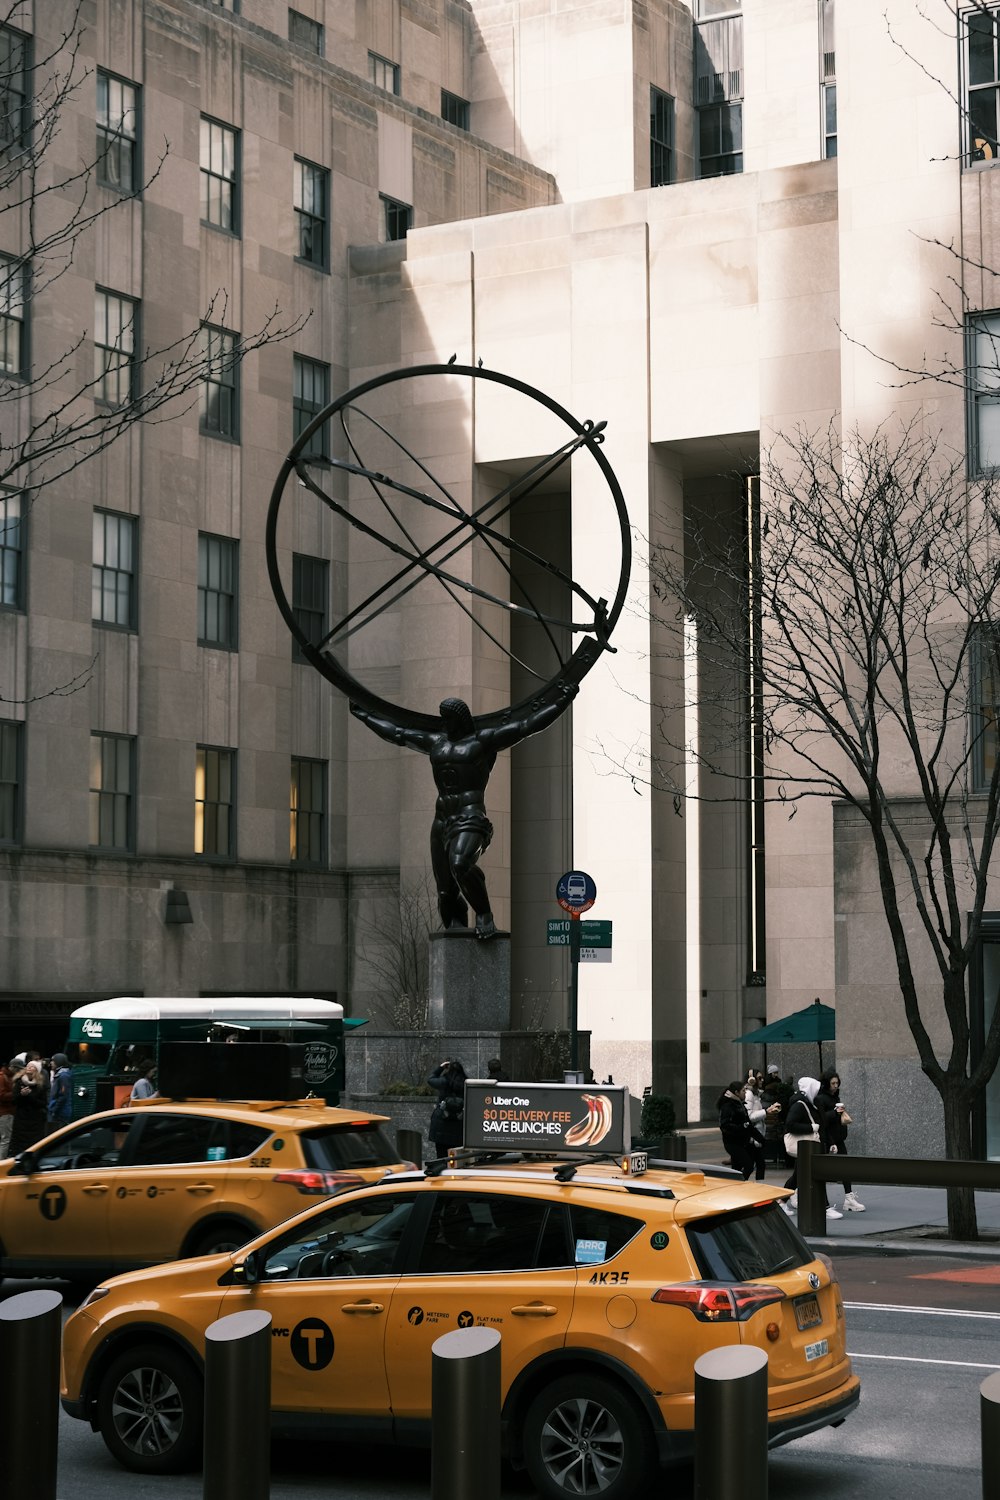 Una escena callejera con taxis y una estatua